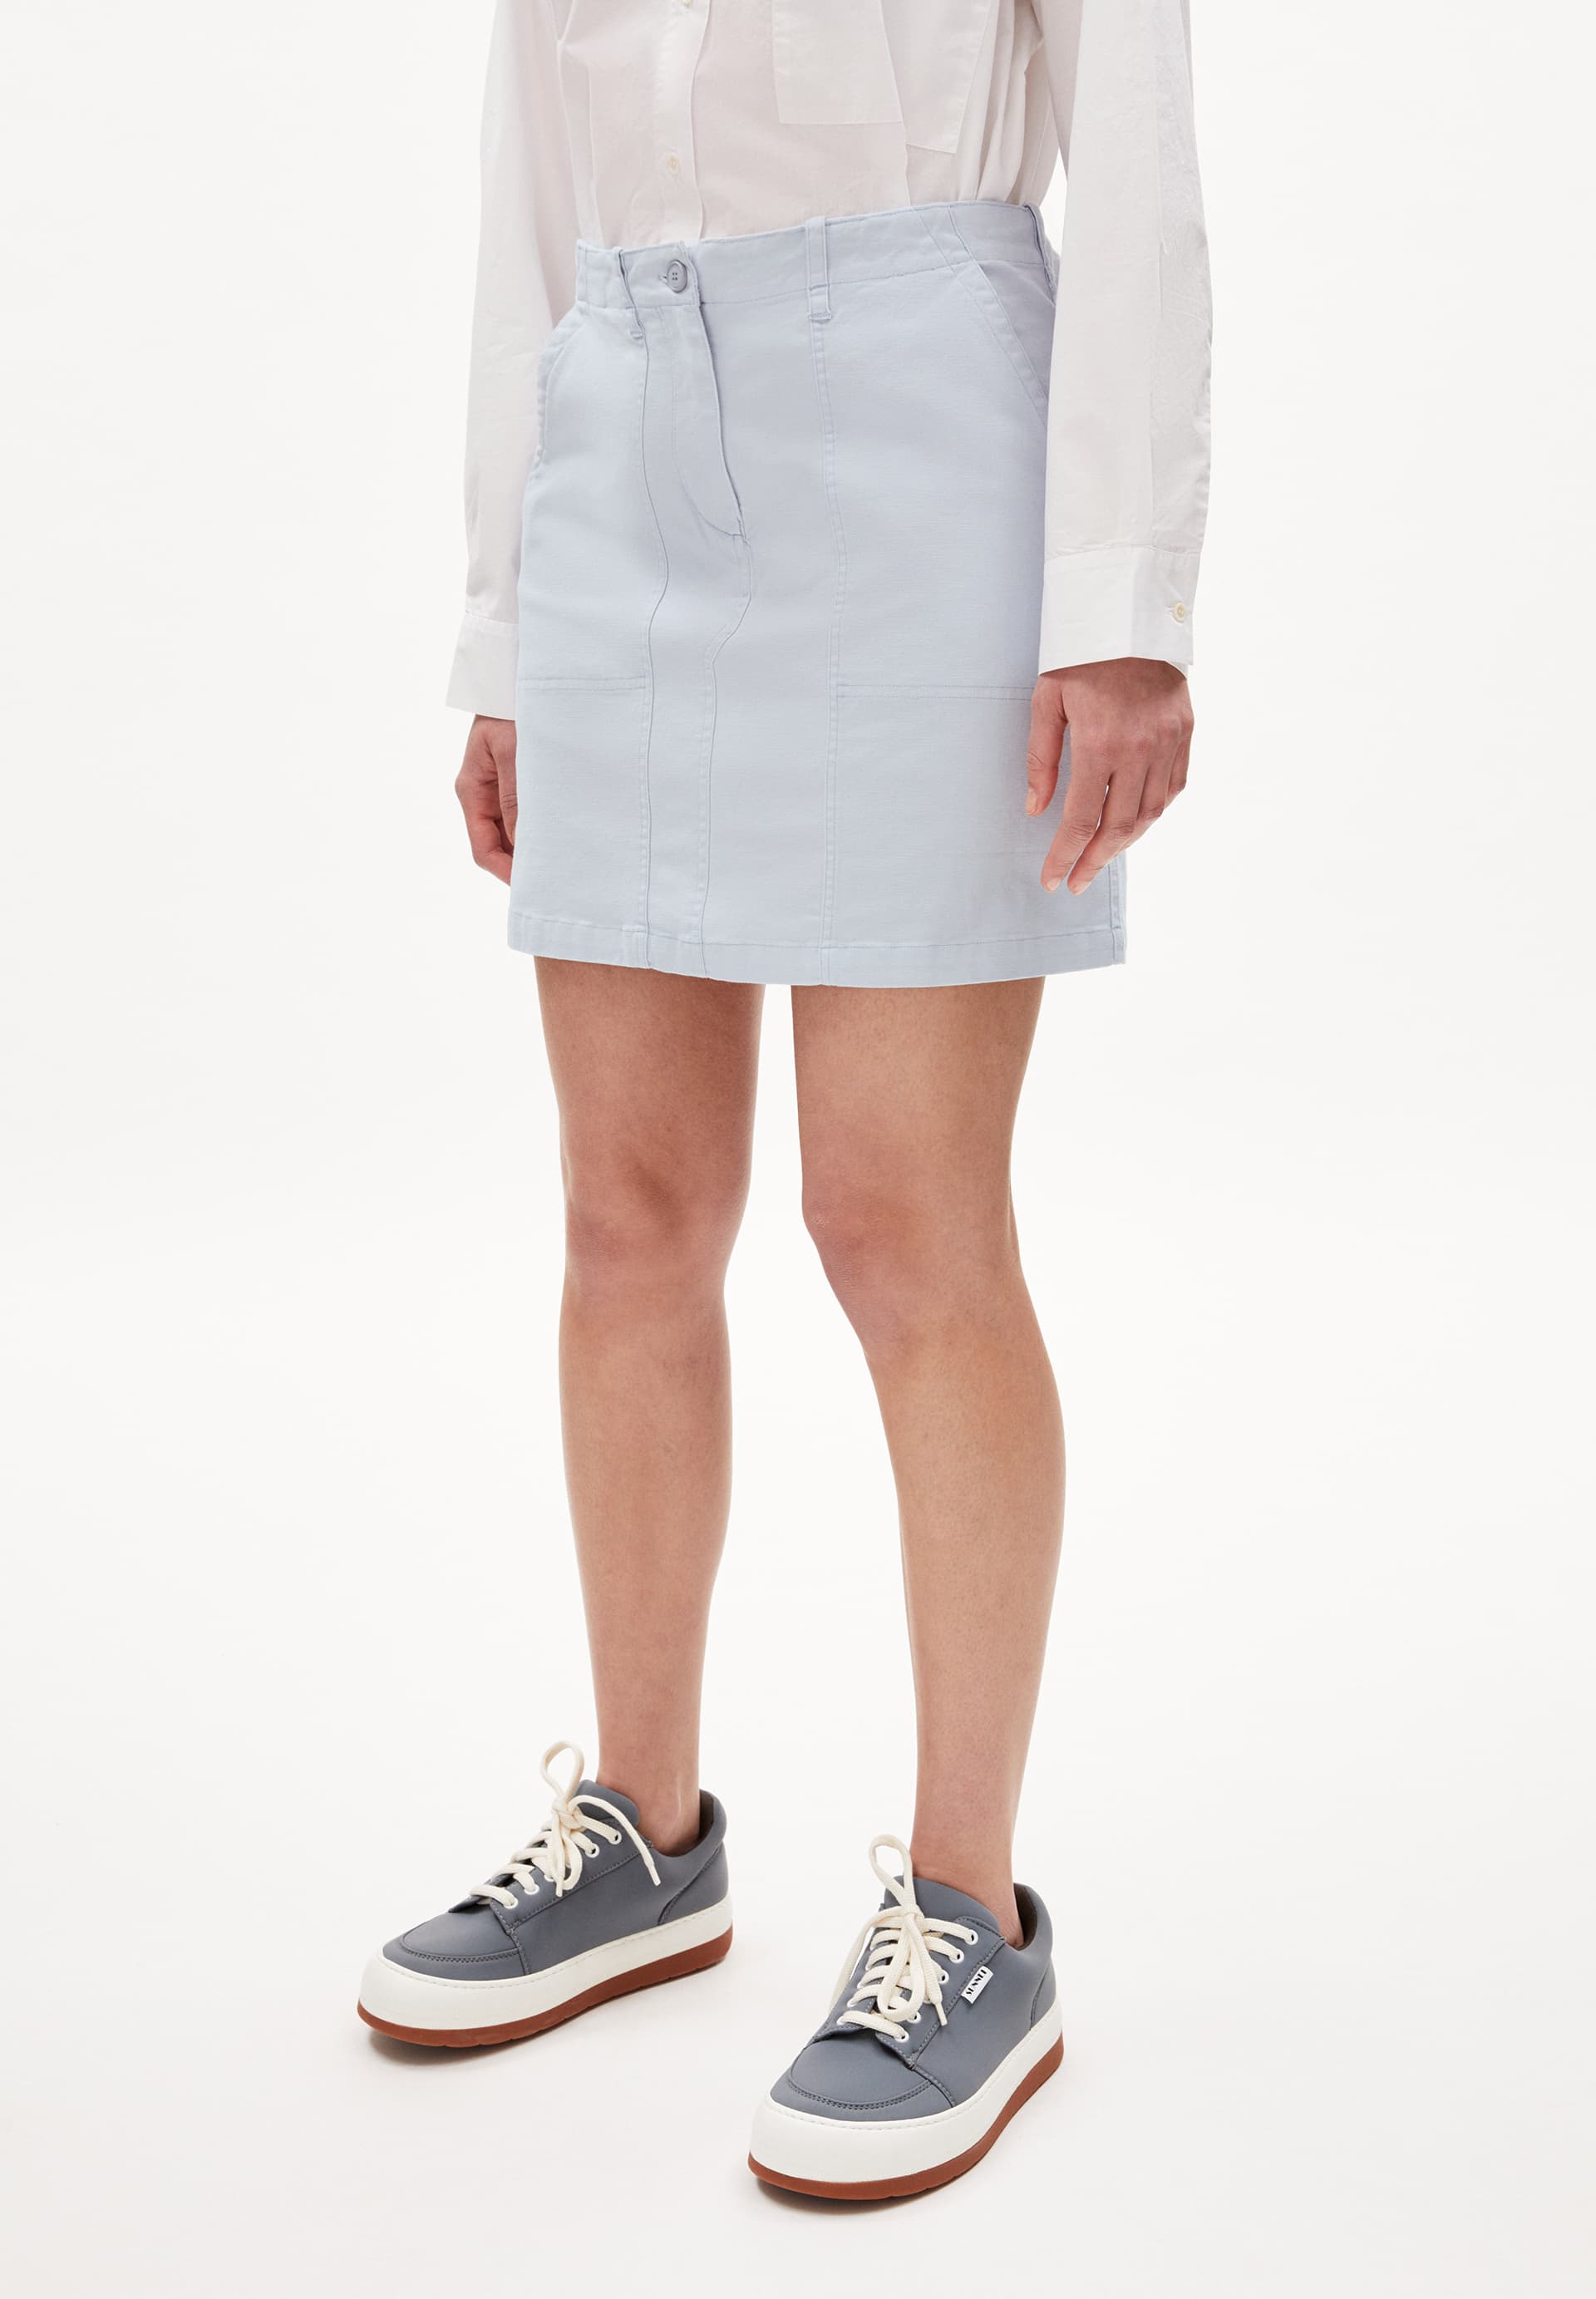 FAAMKE Heavyweight Woven Skirt Regular Fit made of Organic Cotton Mix